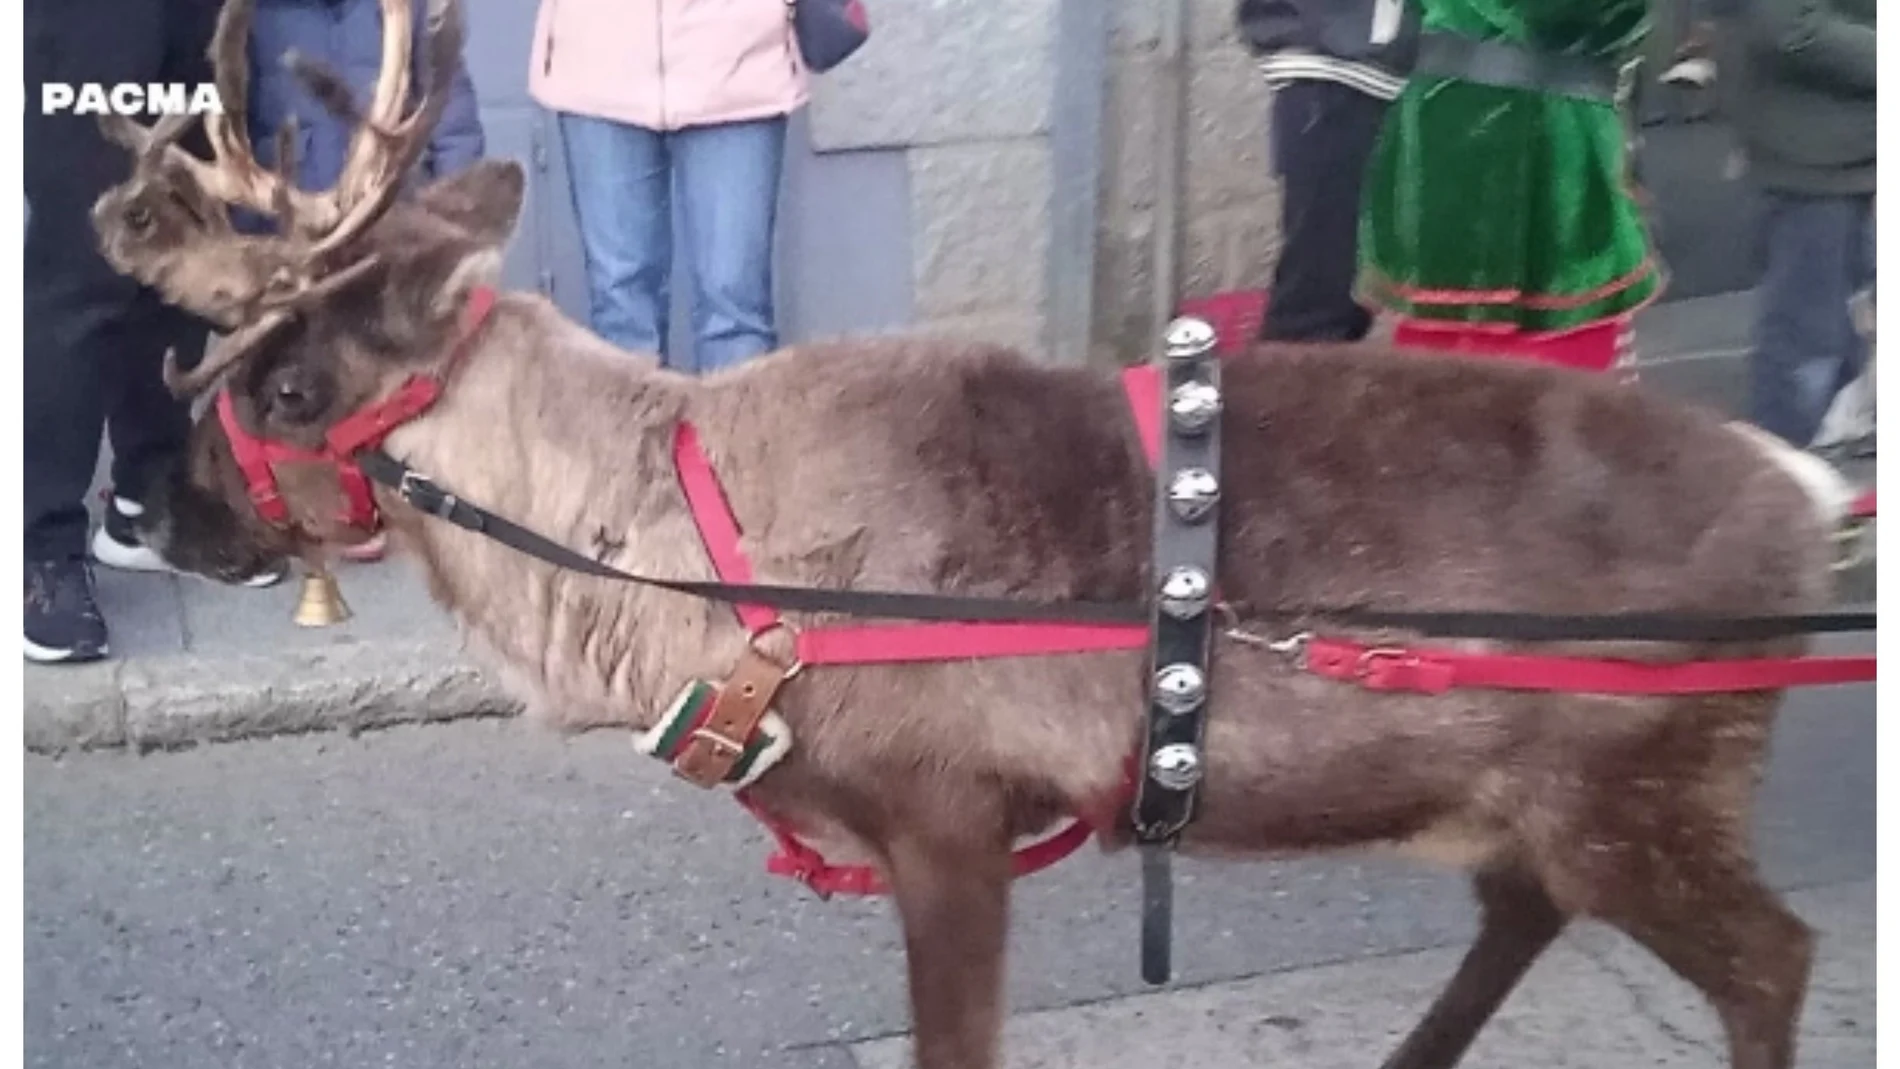 PACMA denuncia el uso de renos en un pasacalles navideño en El Escorial: "Los animales merecen vivir sin estrés ni maltrato"